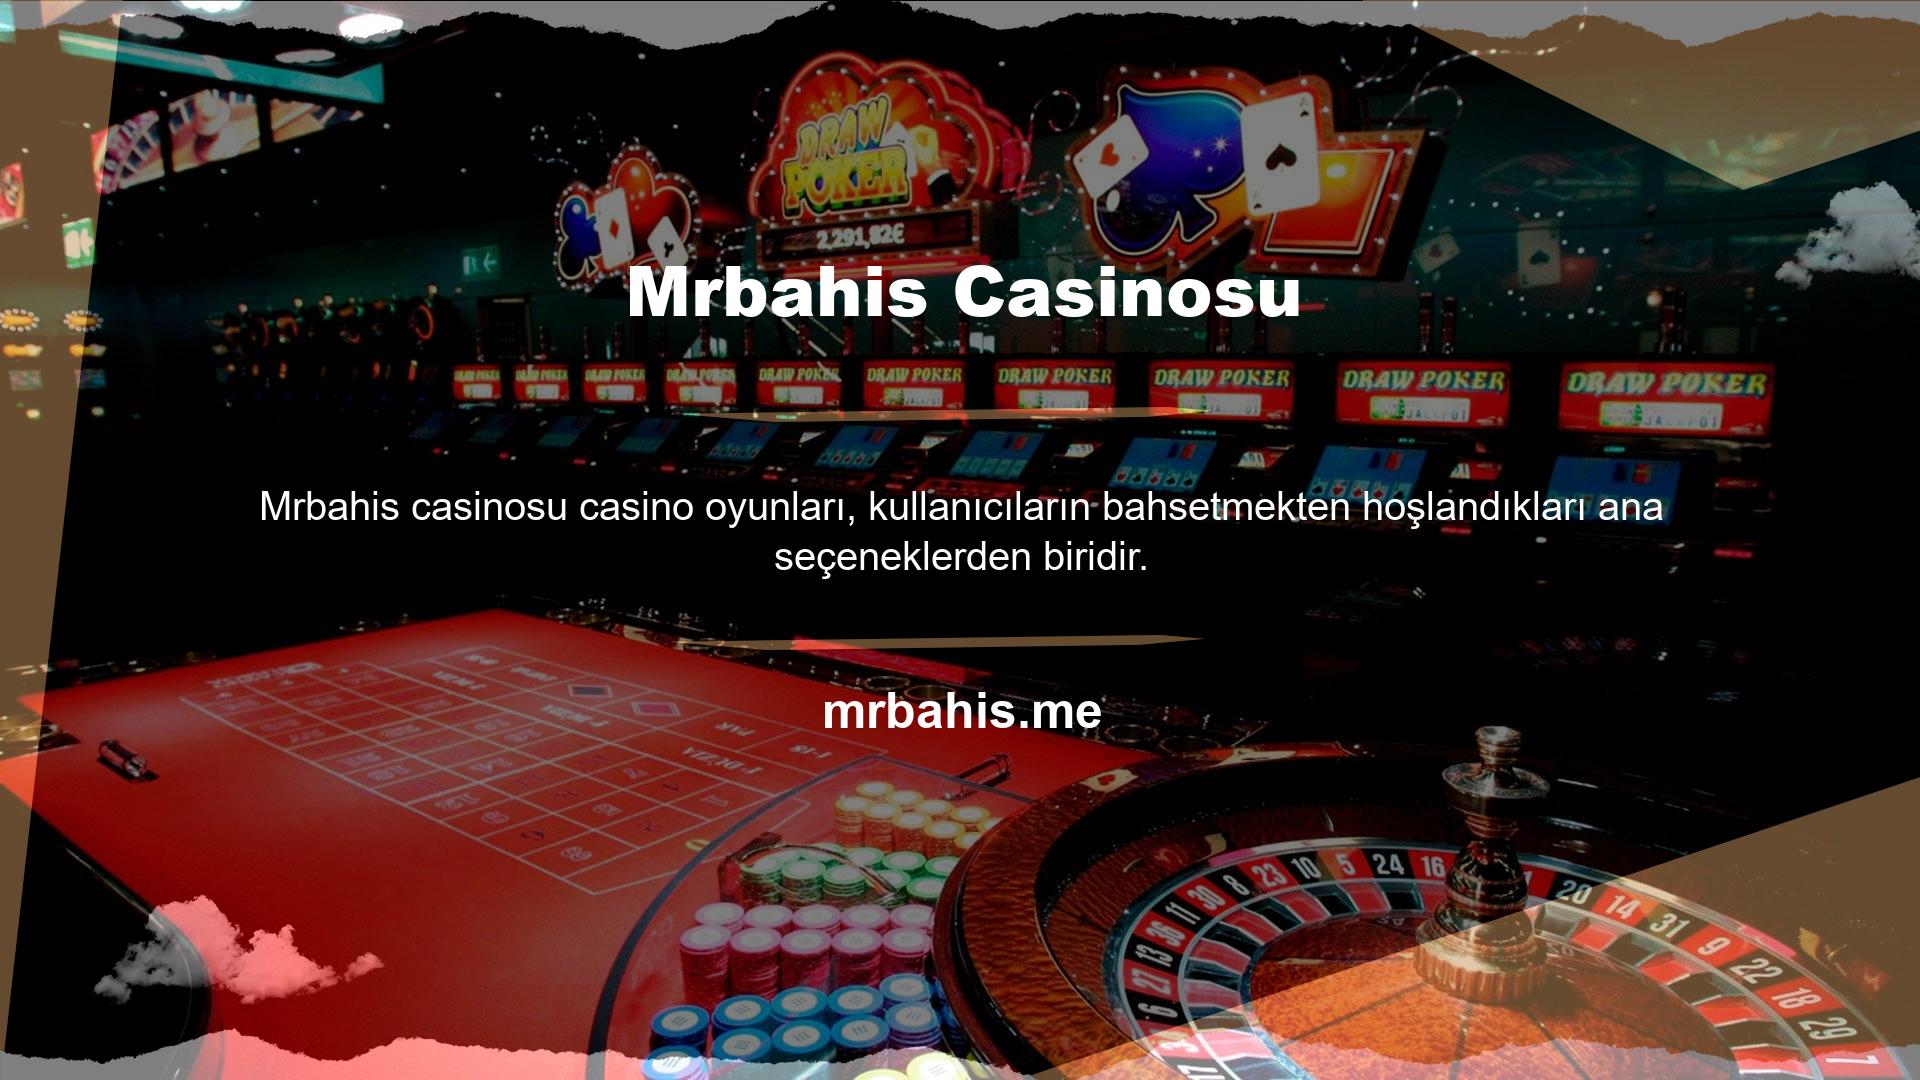 Görüntü kalitesinin tadını çıkarırken çok para kazanmak istiyorsanız casino oyunları ana seçeneklerden biridir